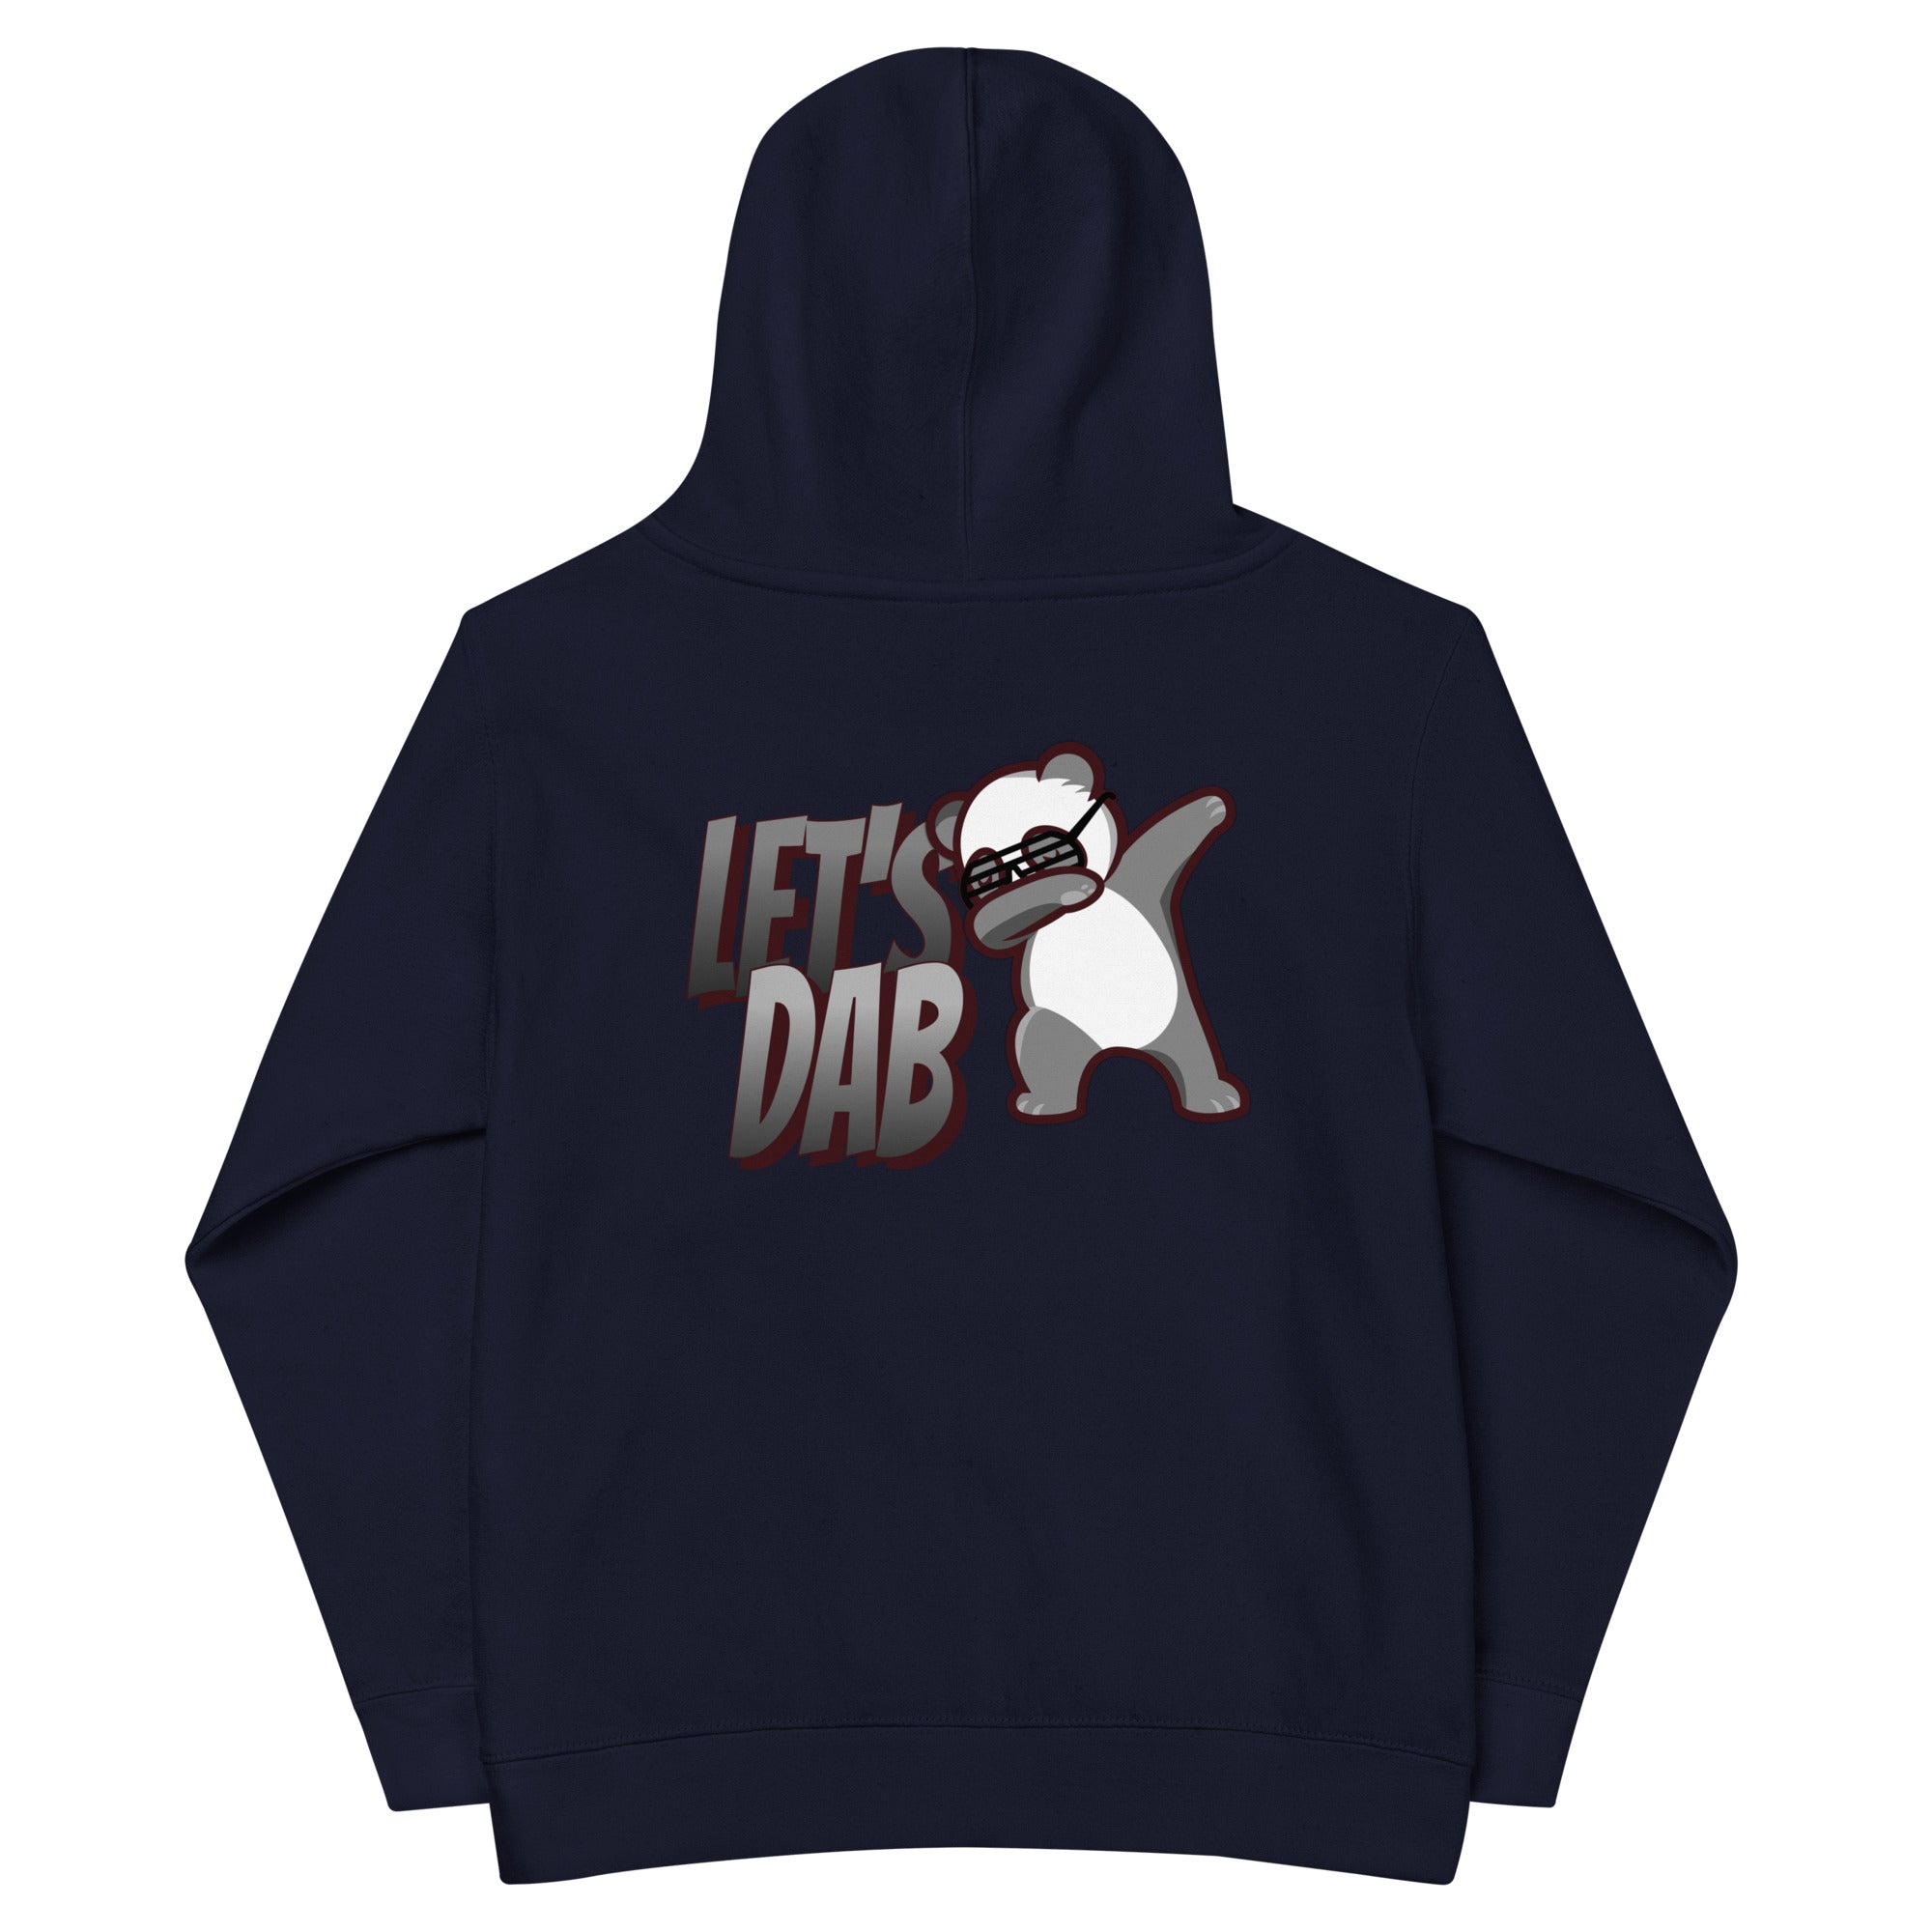 Let's dab - Kids fleece hoodie (back print)